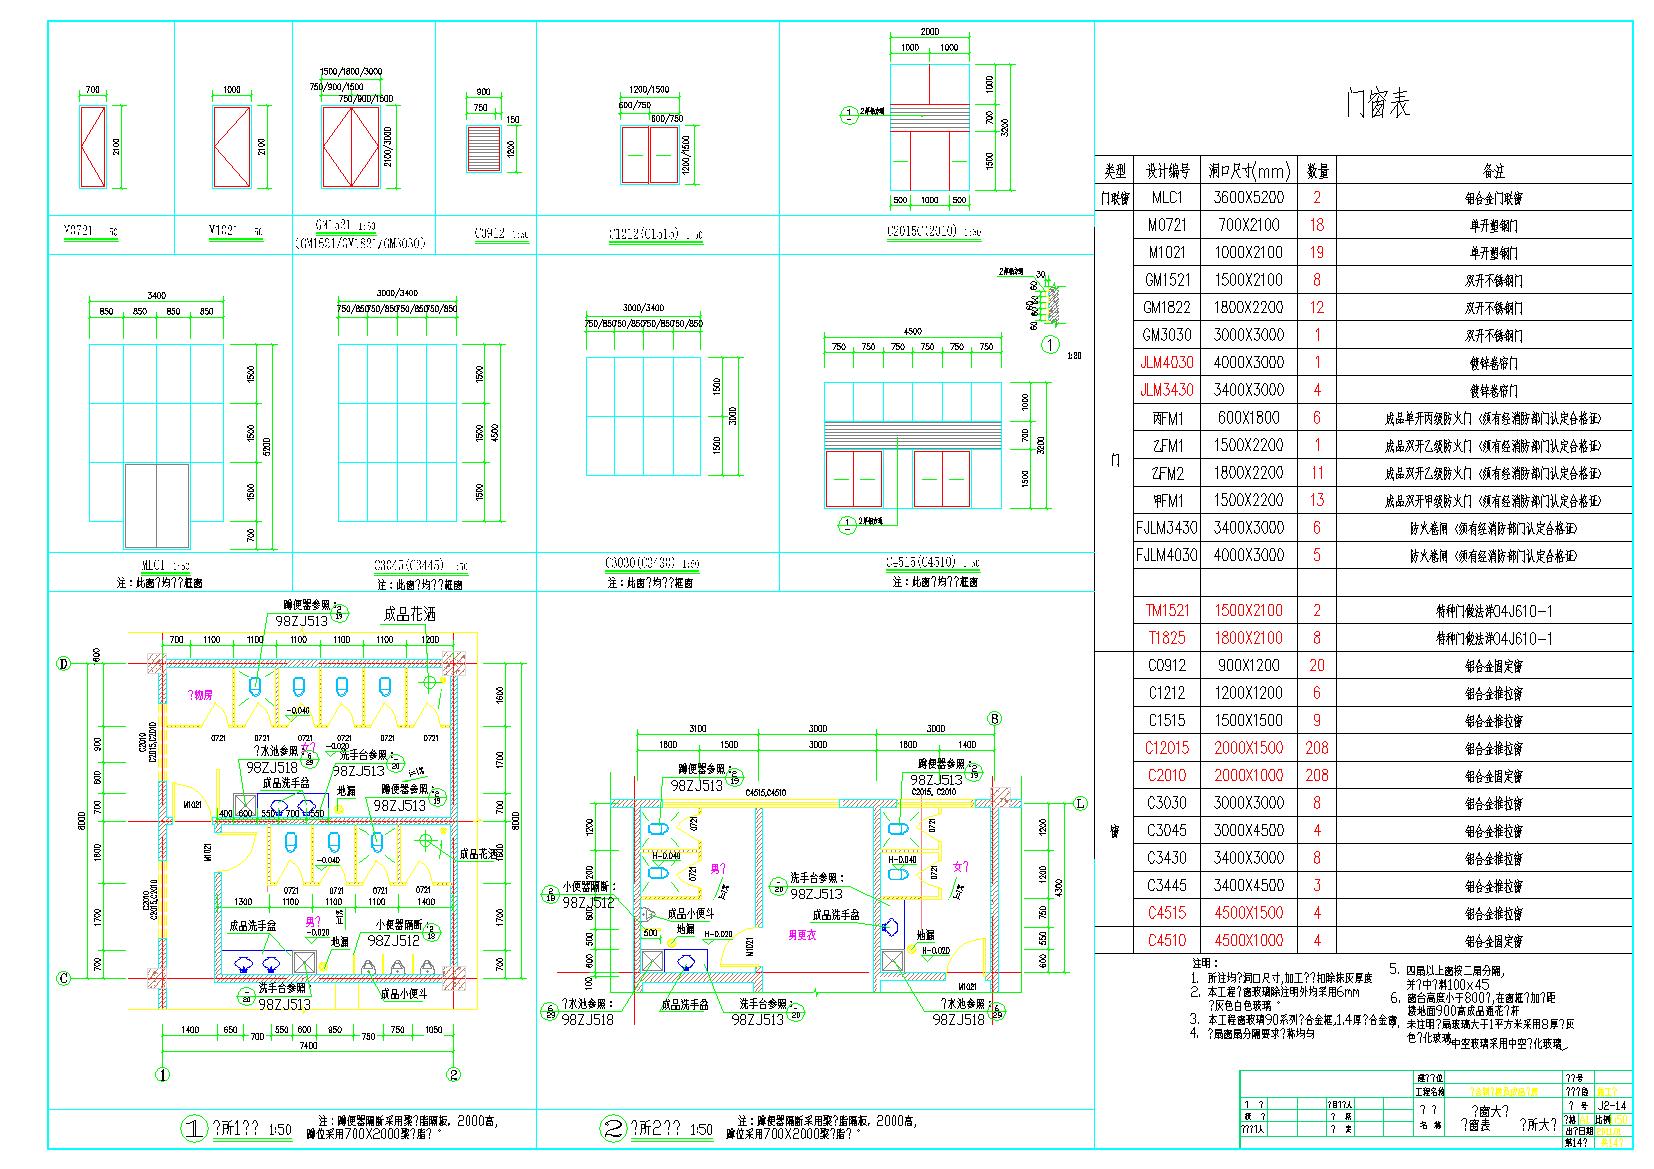 丙类3层车间厂房及丙类仓库库房建筑设计施工图